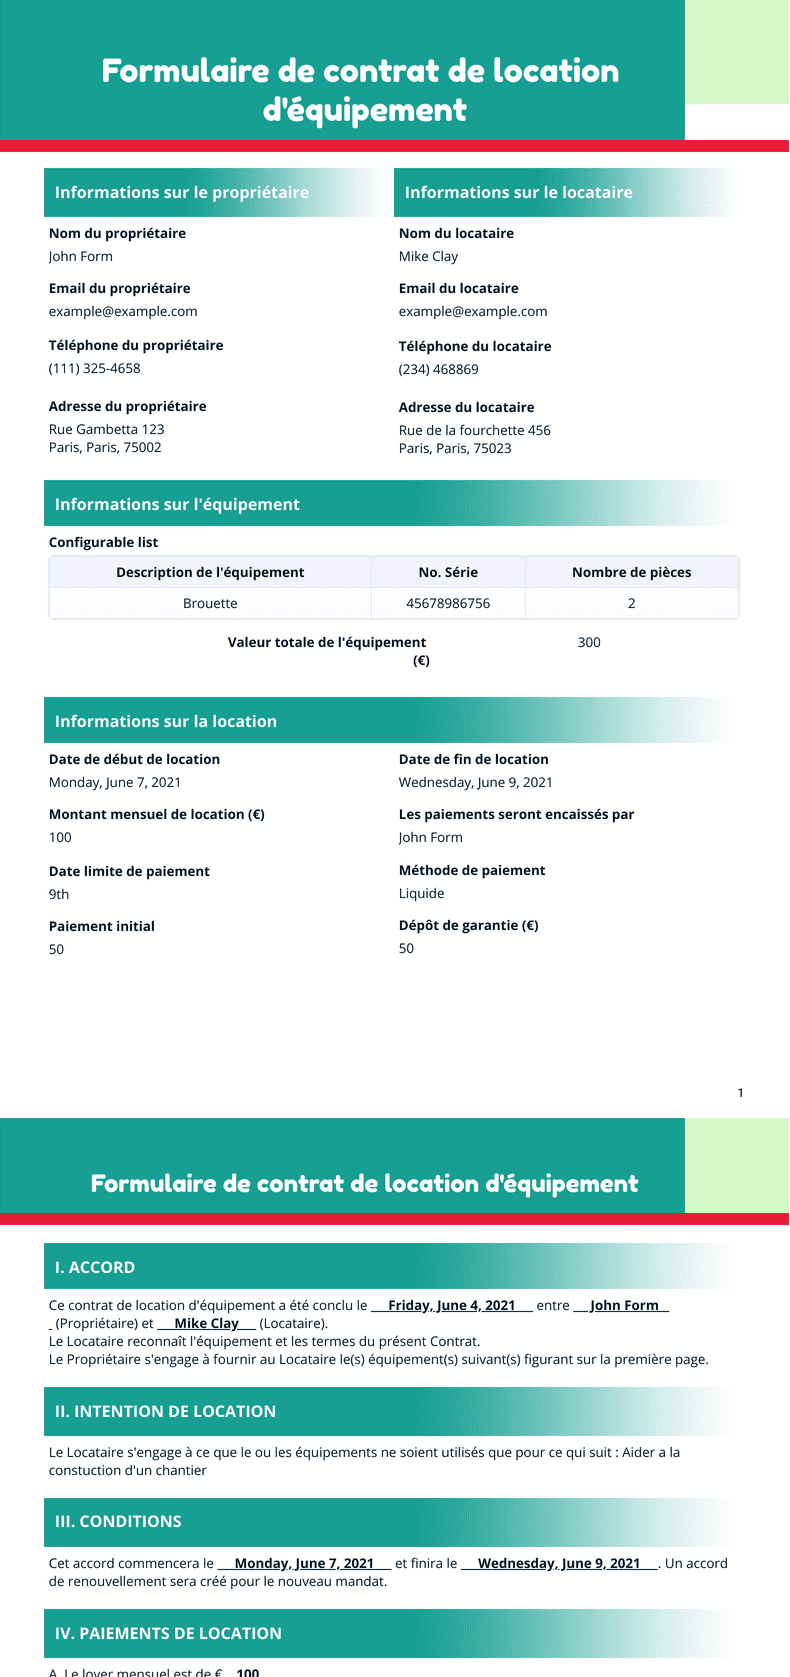 PDF Templates: Formulaire de contrat de location d'équipement